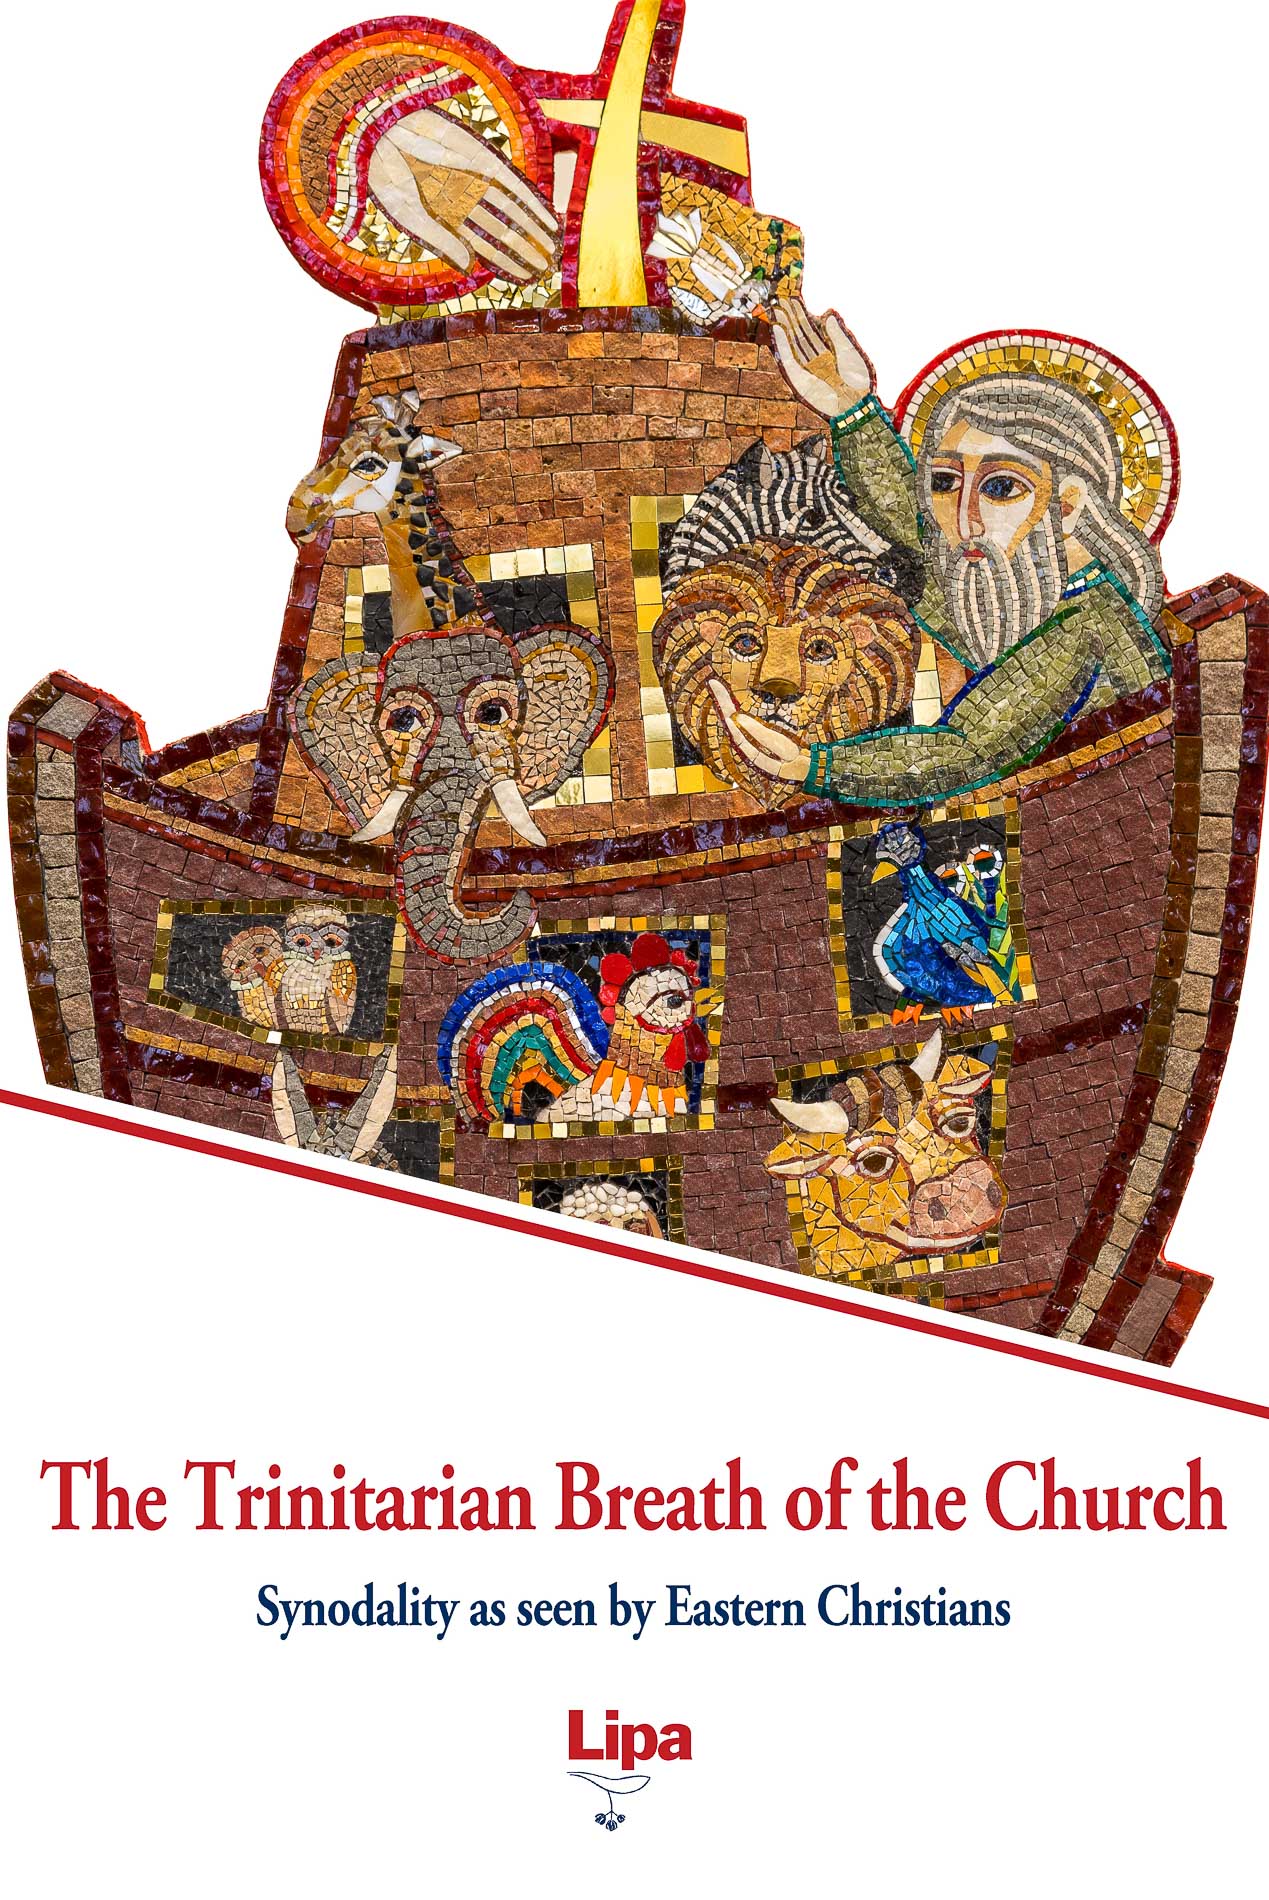 The Trinitarian Breath of the Church 3